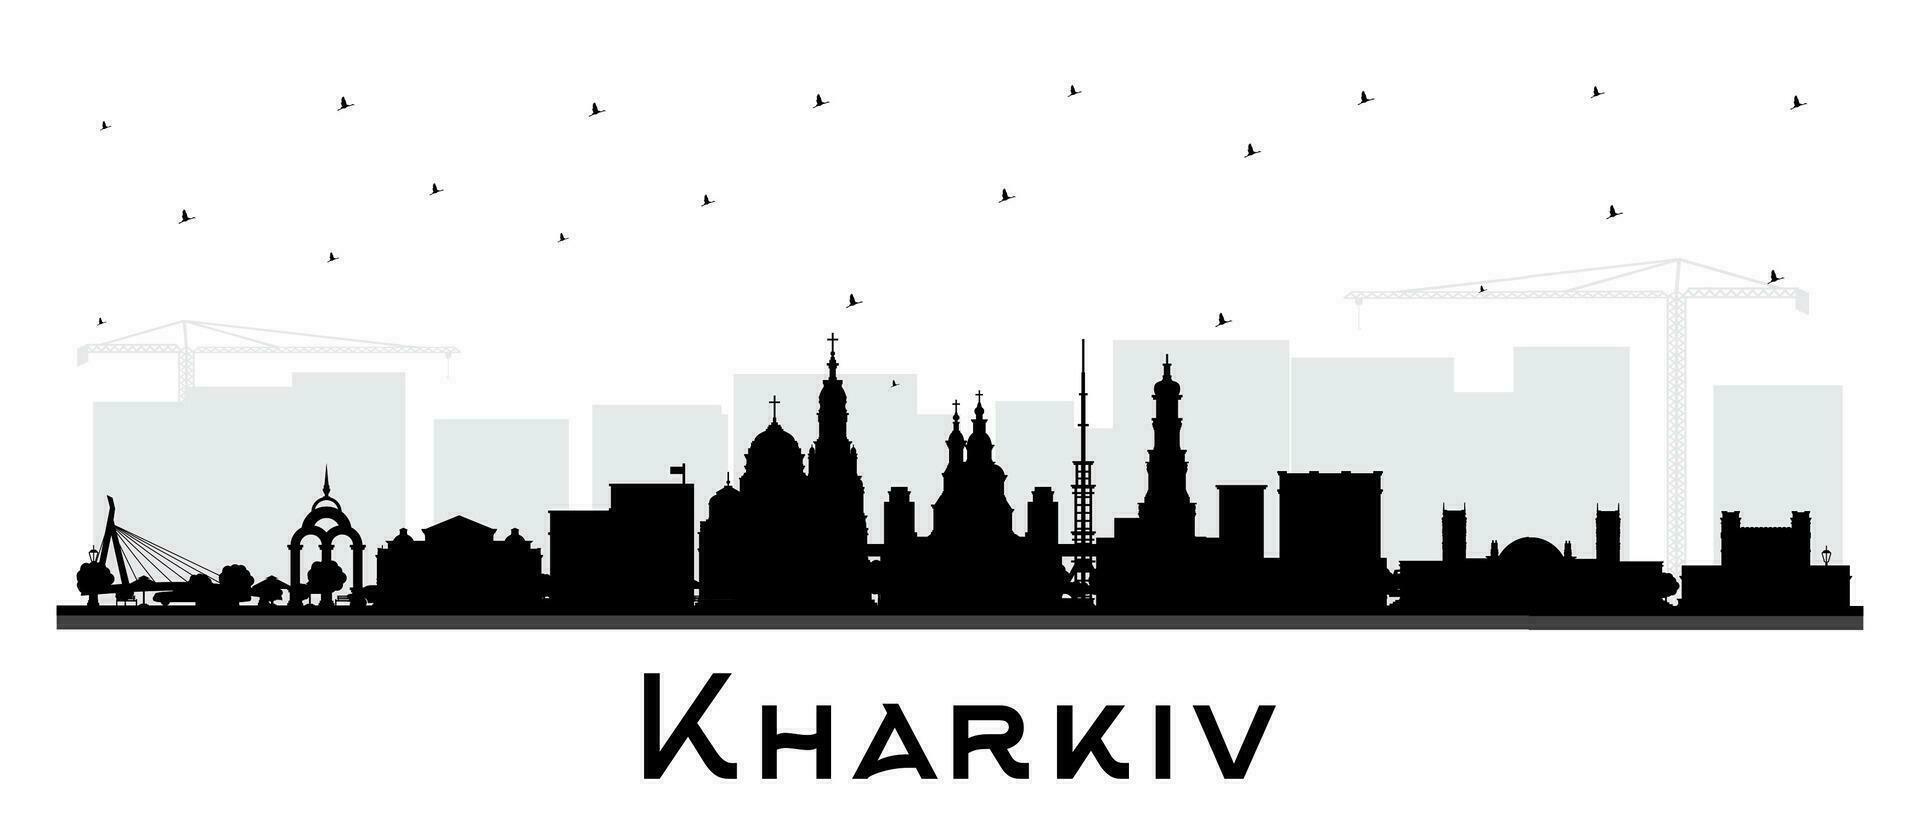 kharkiv ukraina stad horisont silhuett med svart byggnader isolerat på vit. kharkiv stadsbild med landmärken. företag resa och turism begrepp med historisk arkitektur. vektor